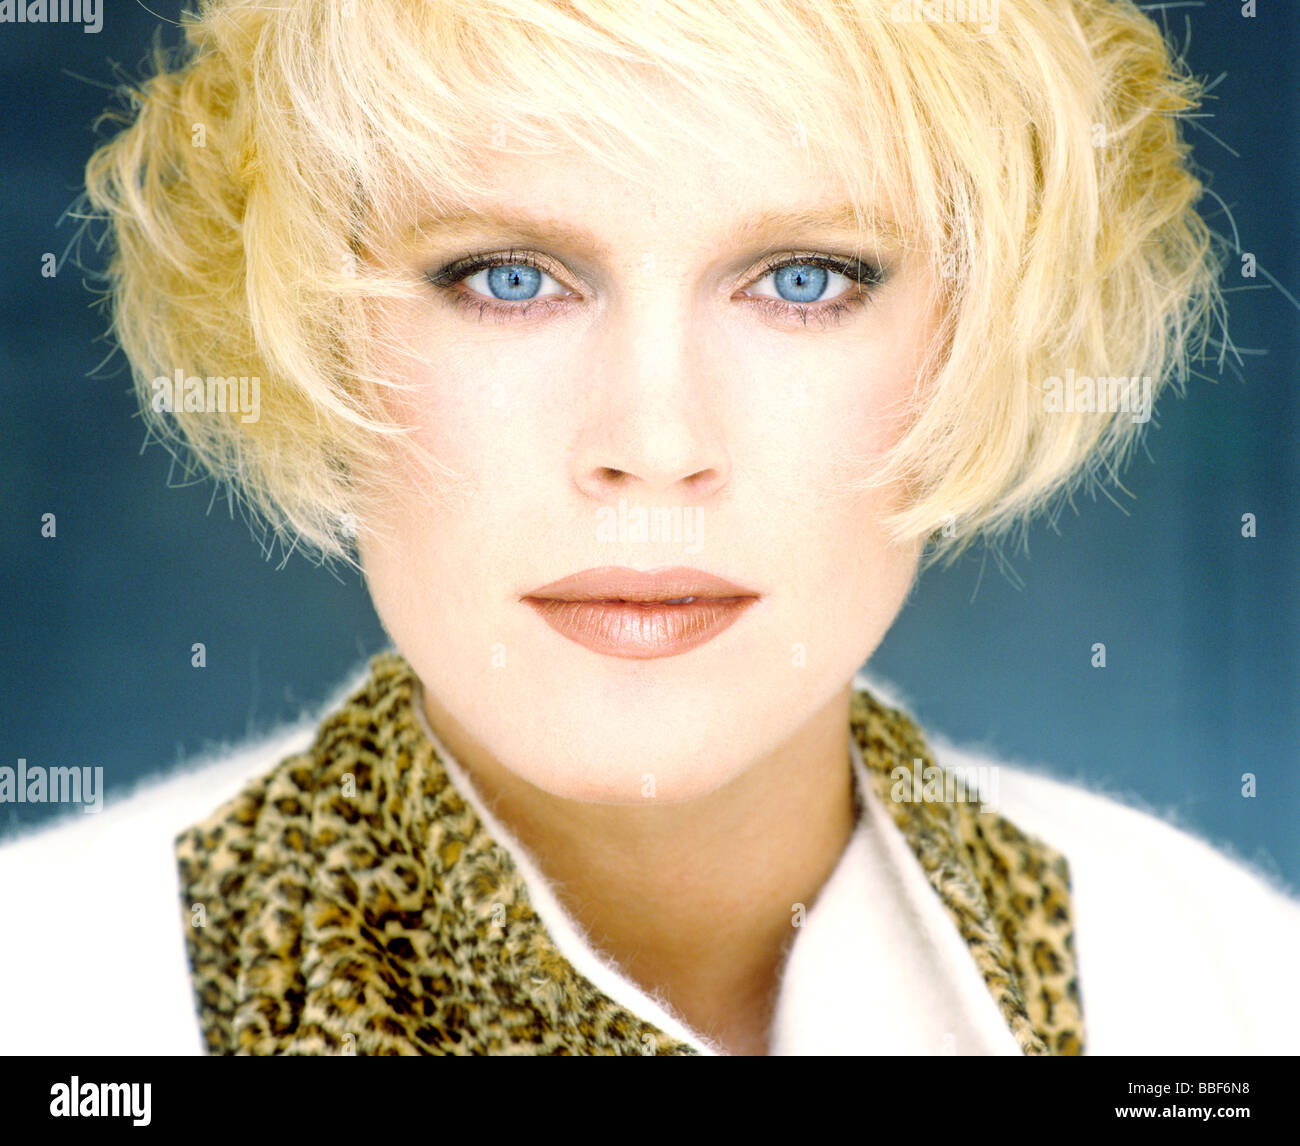 Ritratto di blondie con gli occhi blu Foto Stock